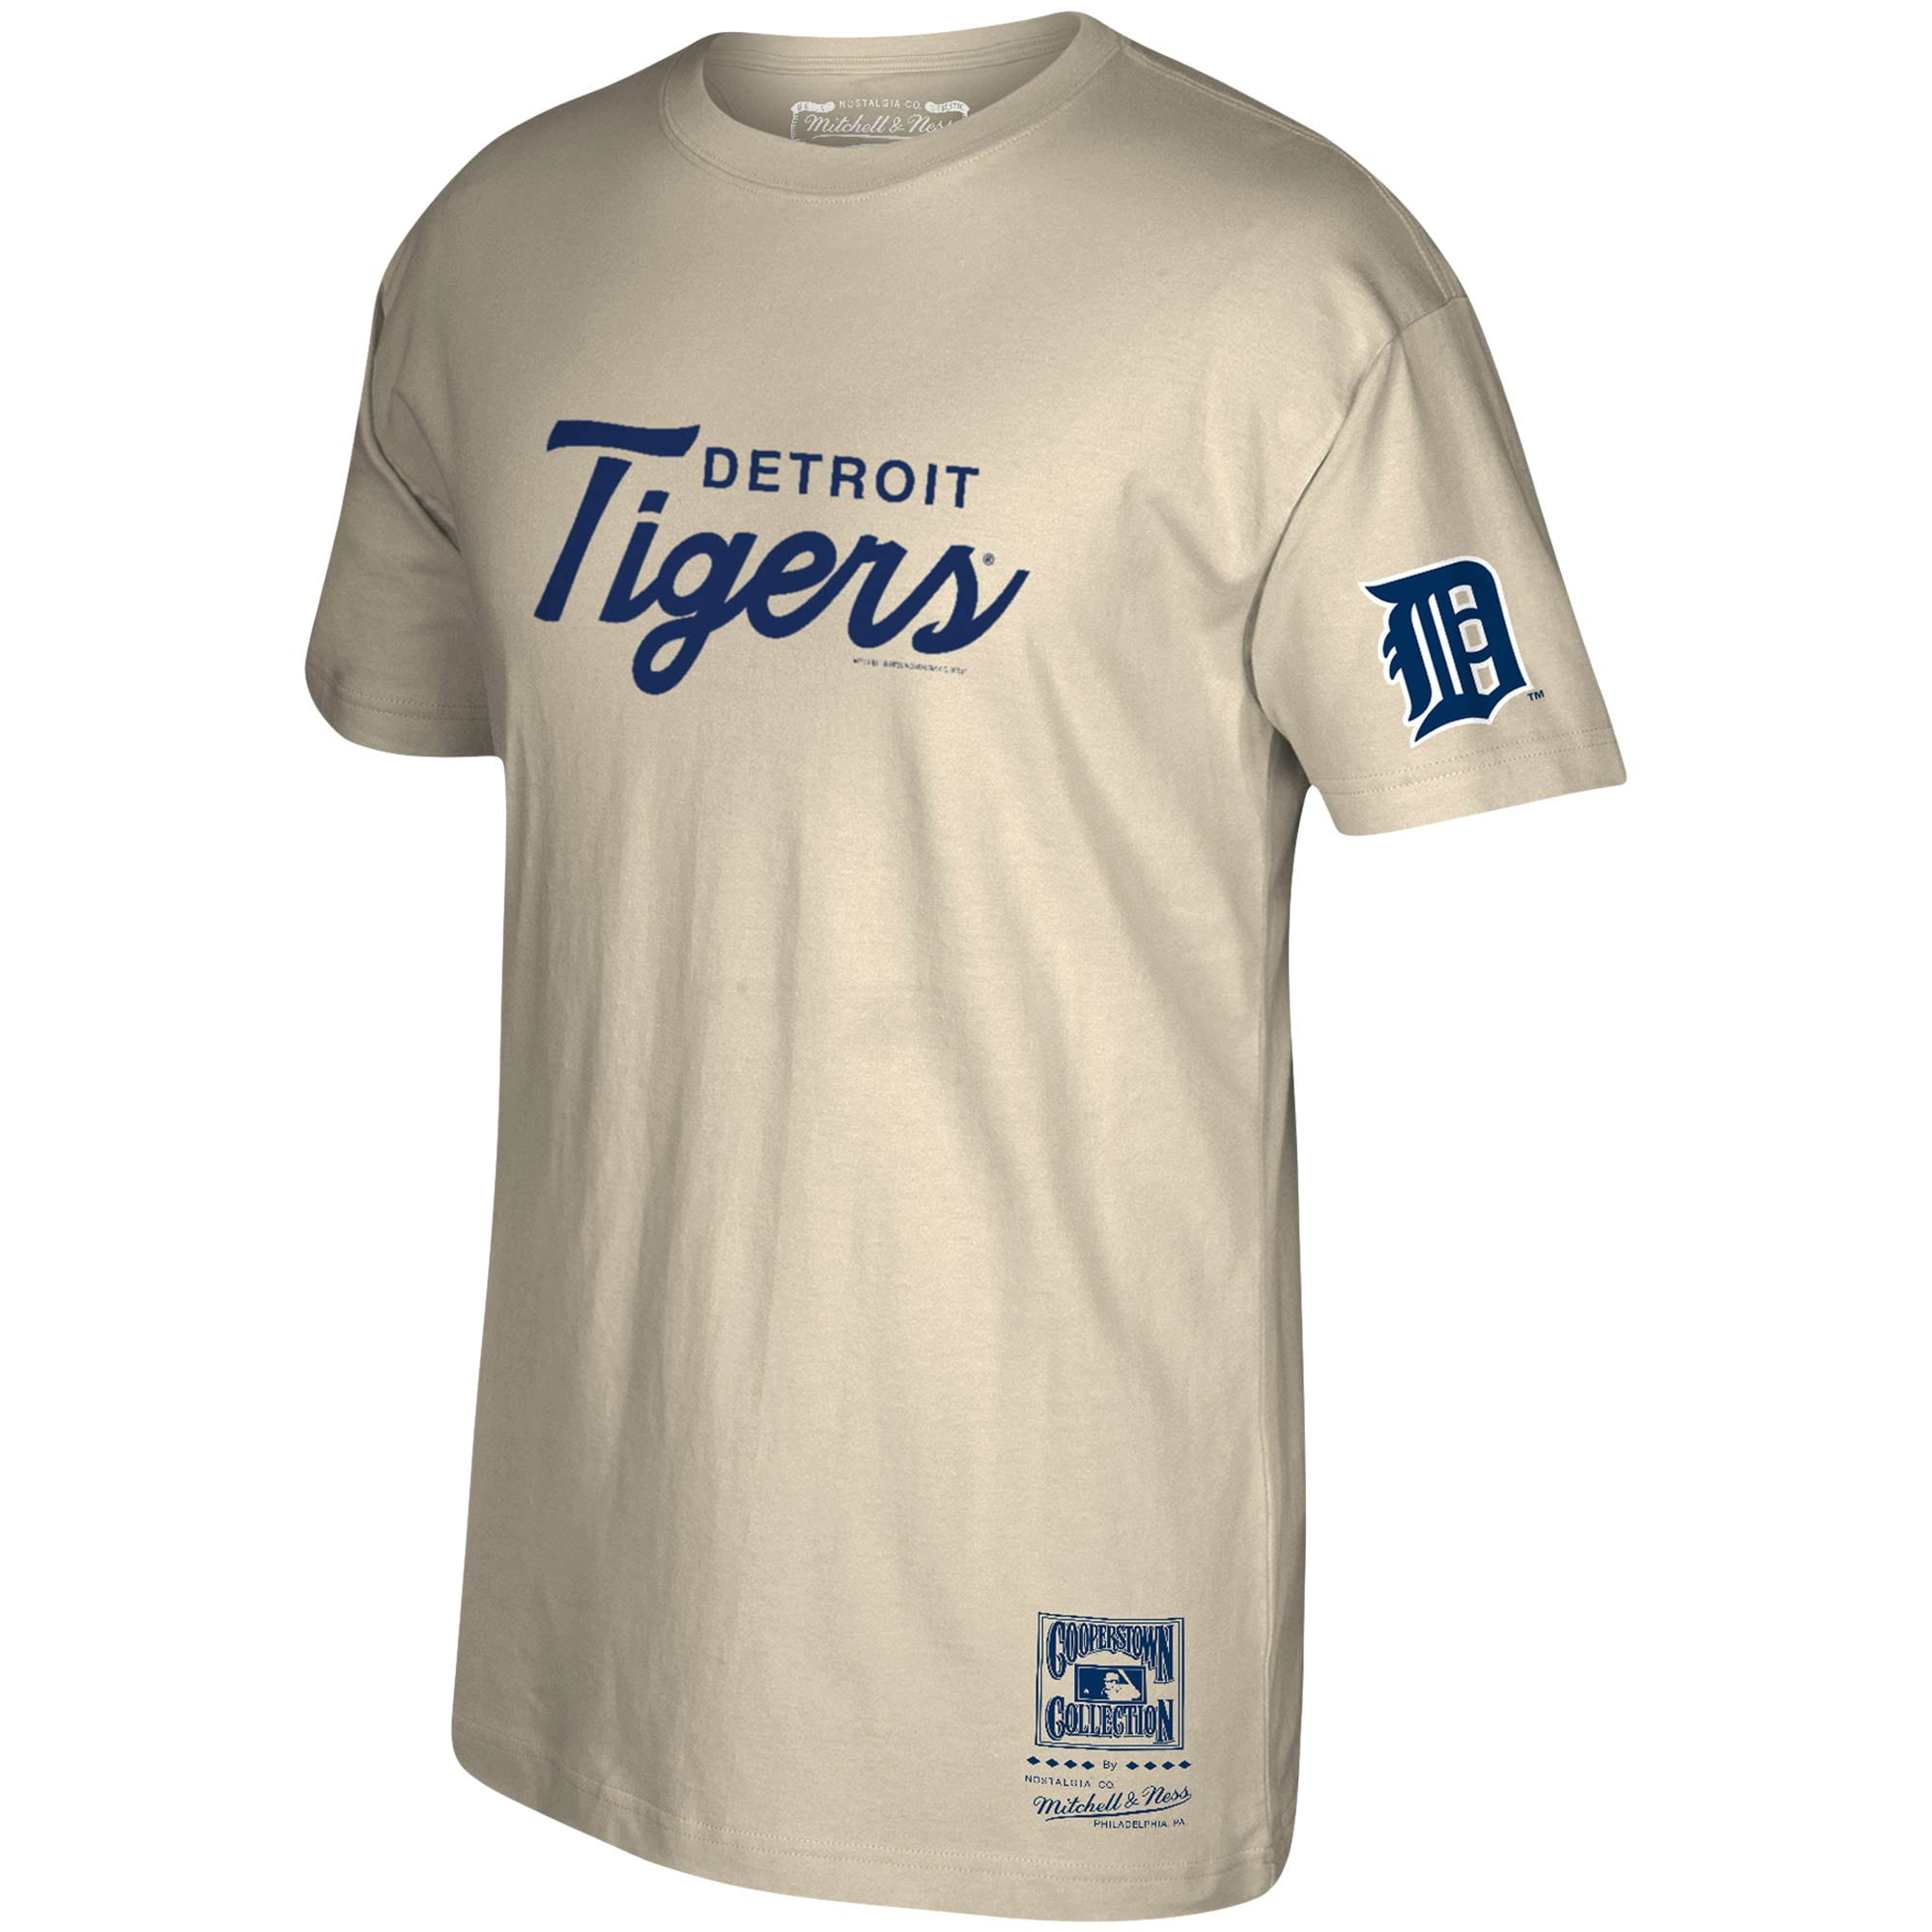 detroit tigers vintage t shirt